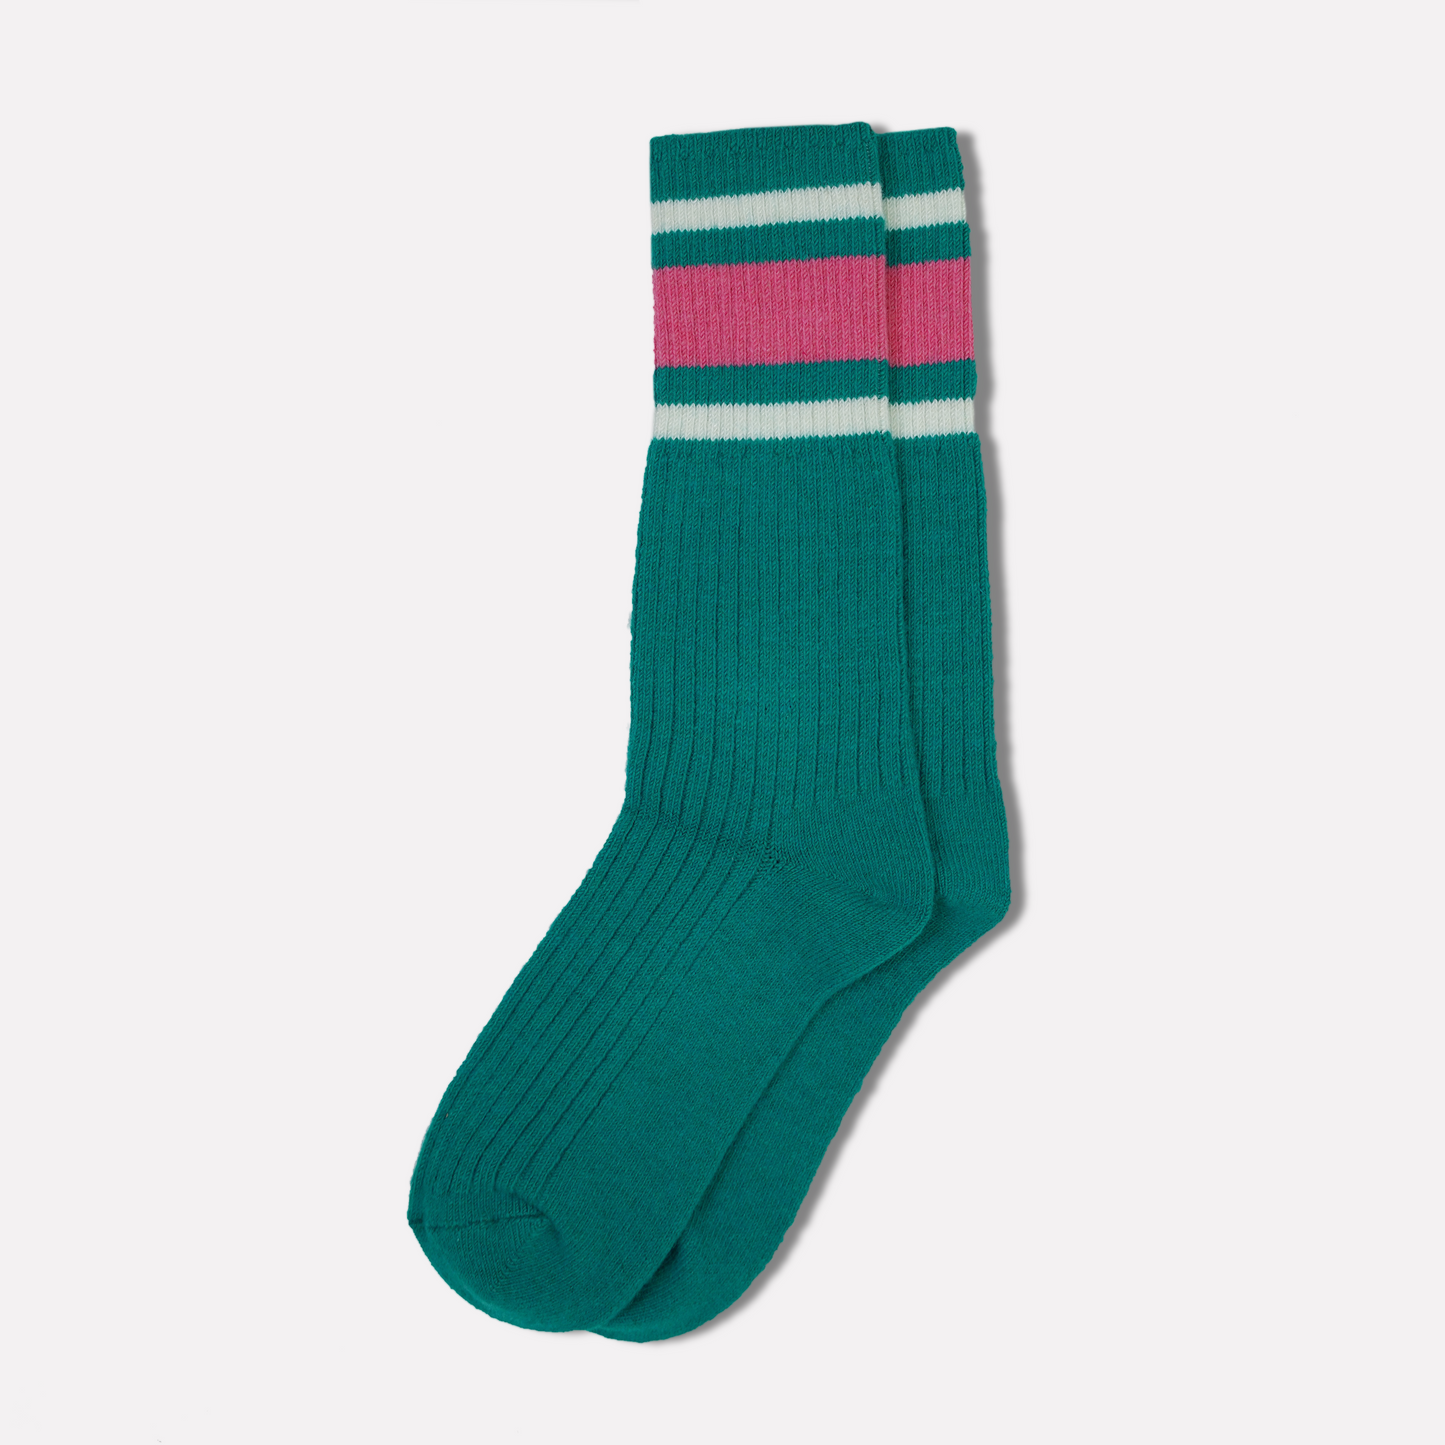 Striped Socks in Green